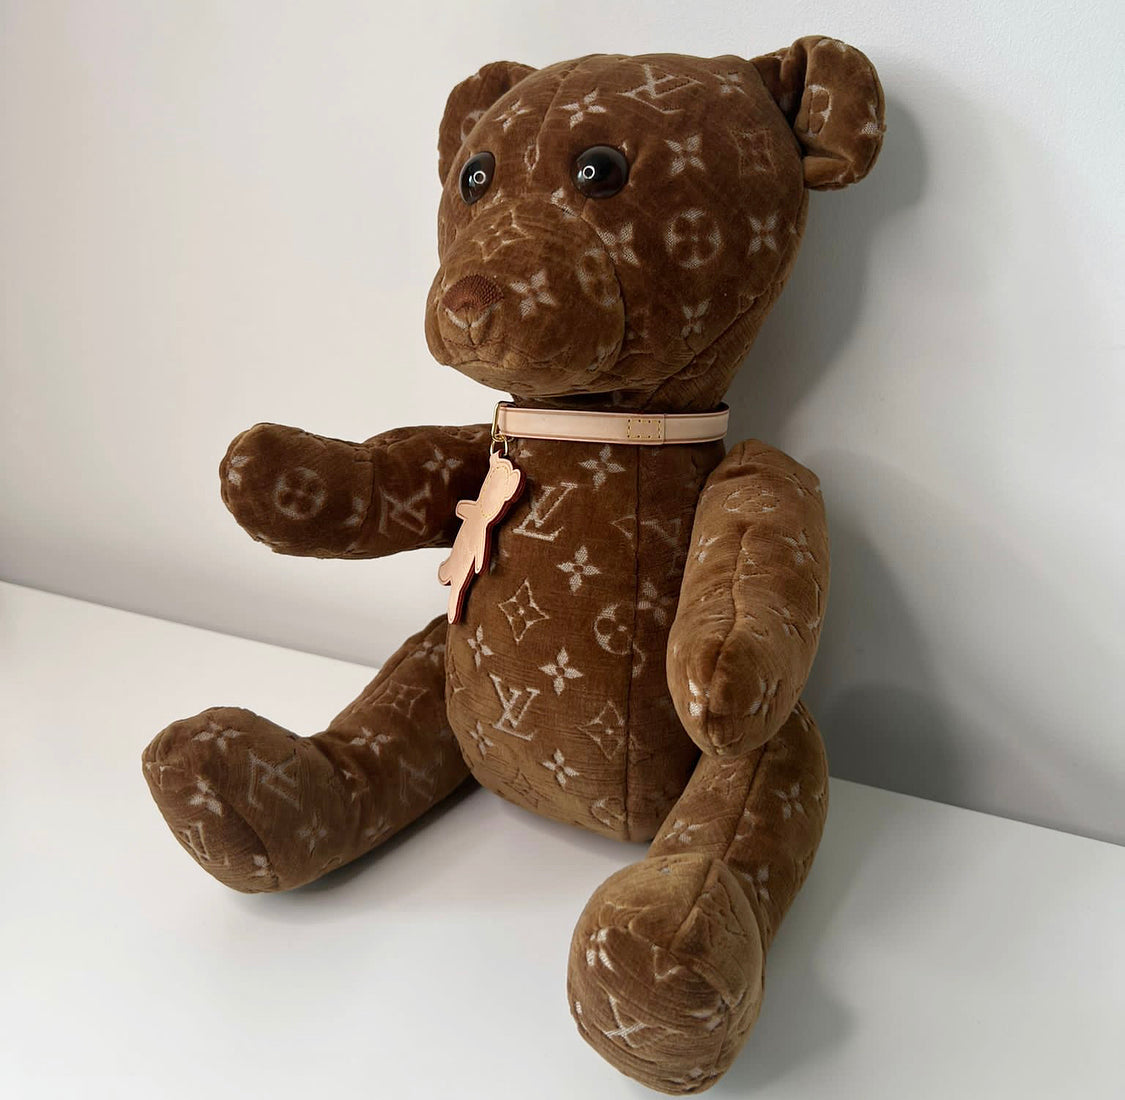 Louis Vuitton Doudou Teddy Bear